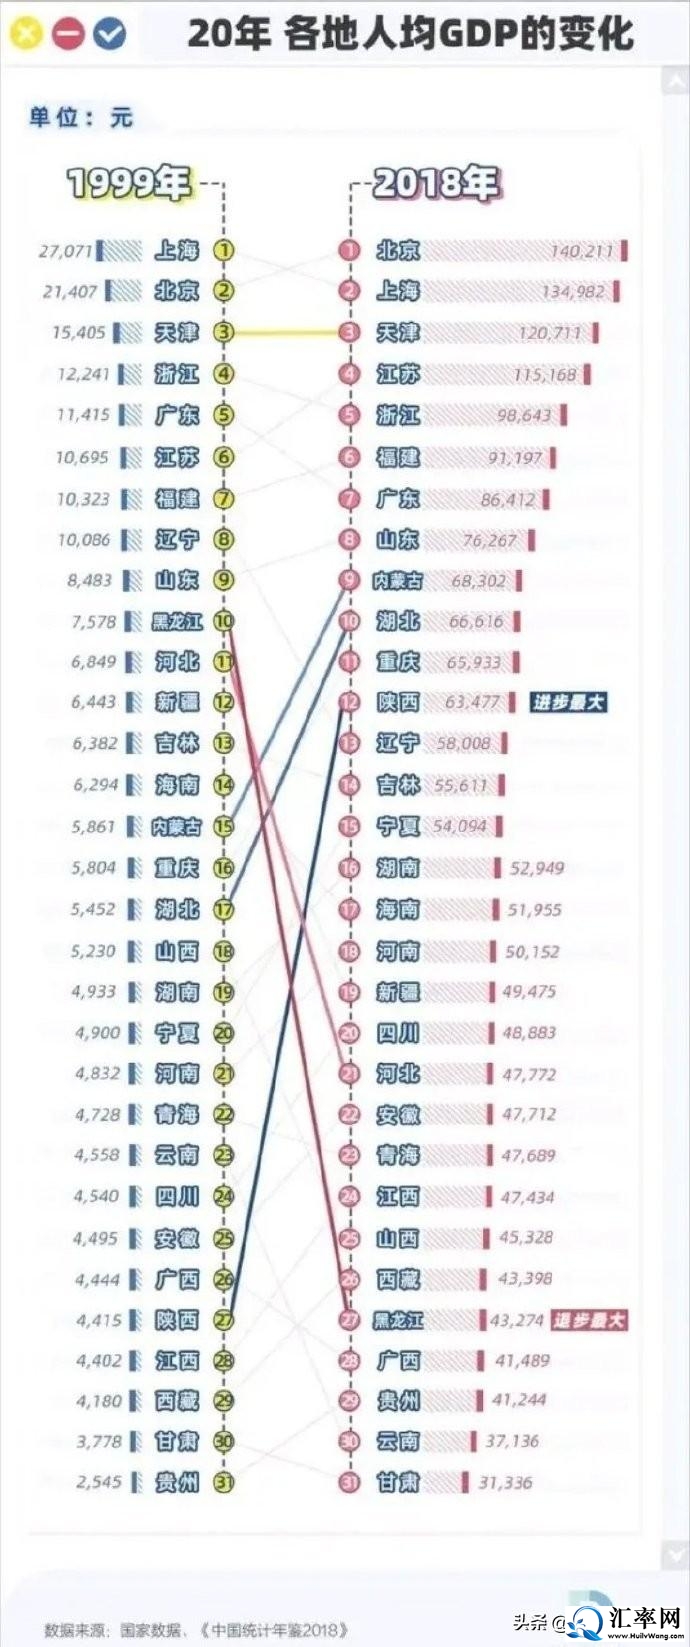 1999年至2018年20年间中国各省市人均GDP的变化.jpeg